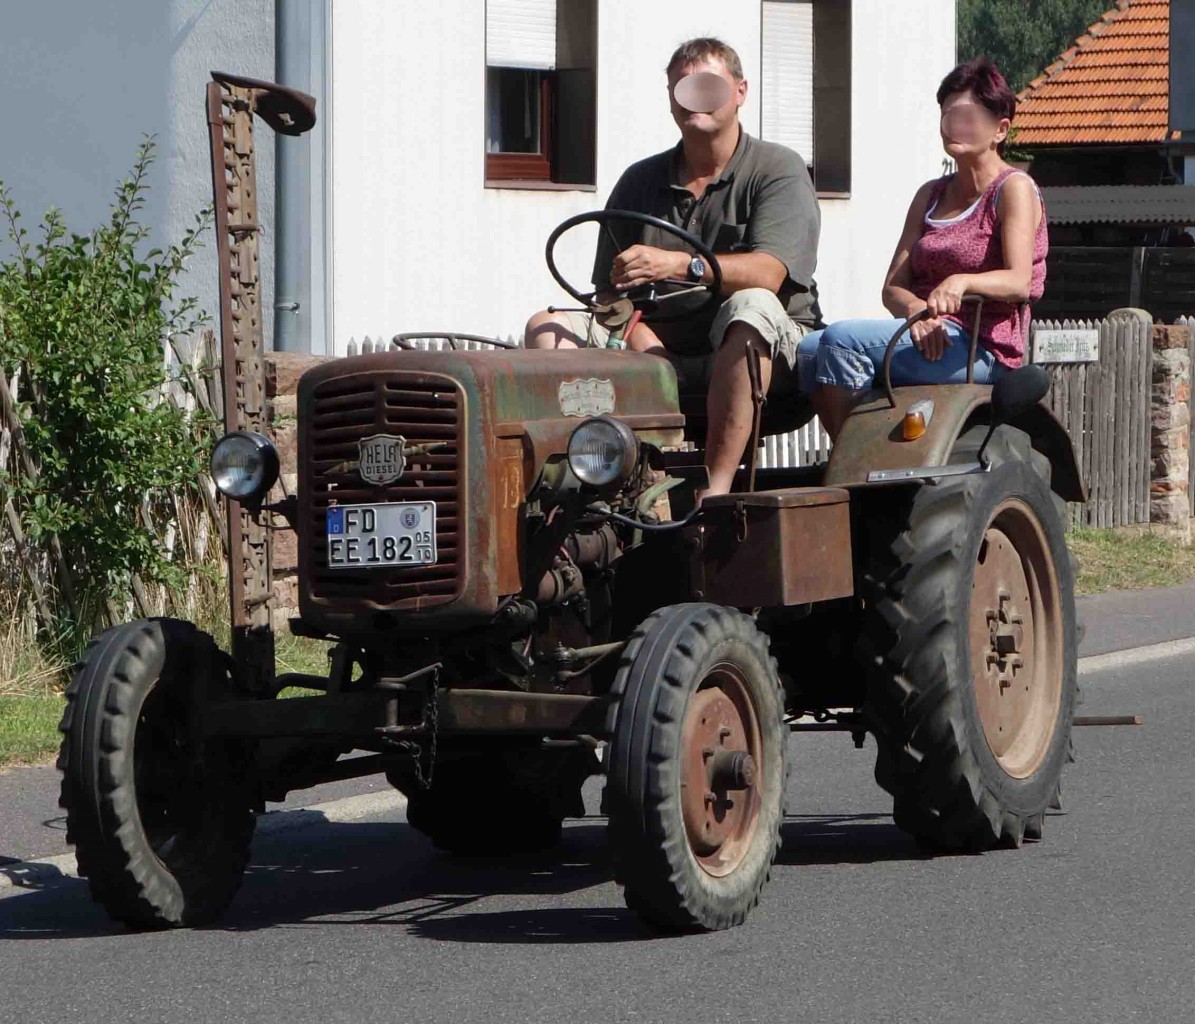 Hela, unterwegs beim Festzug anl. der 2015er Oldtimerausstellung in Pferdsdorf/Thüringen, 08/2015